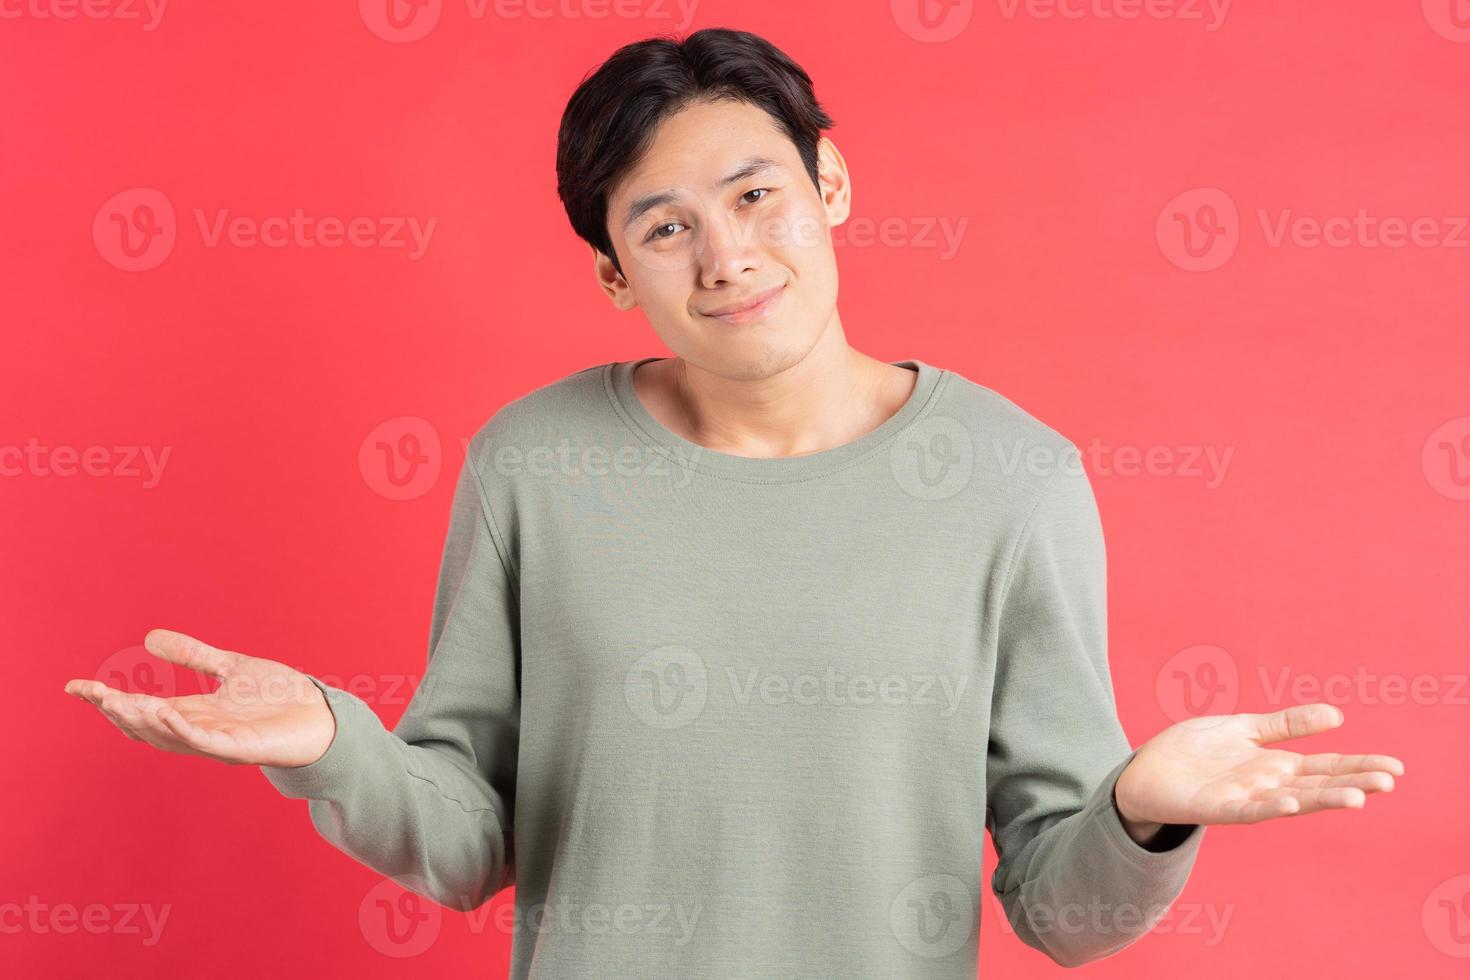 ett foto av en stilig asiatisk man som rycker på axlarna i förvirring